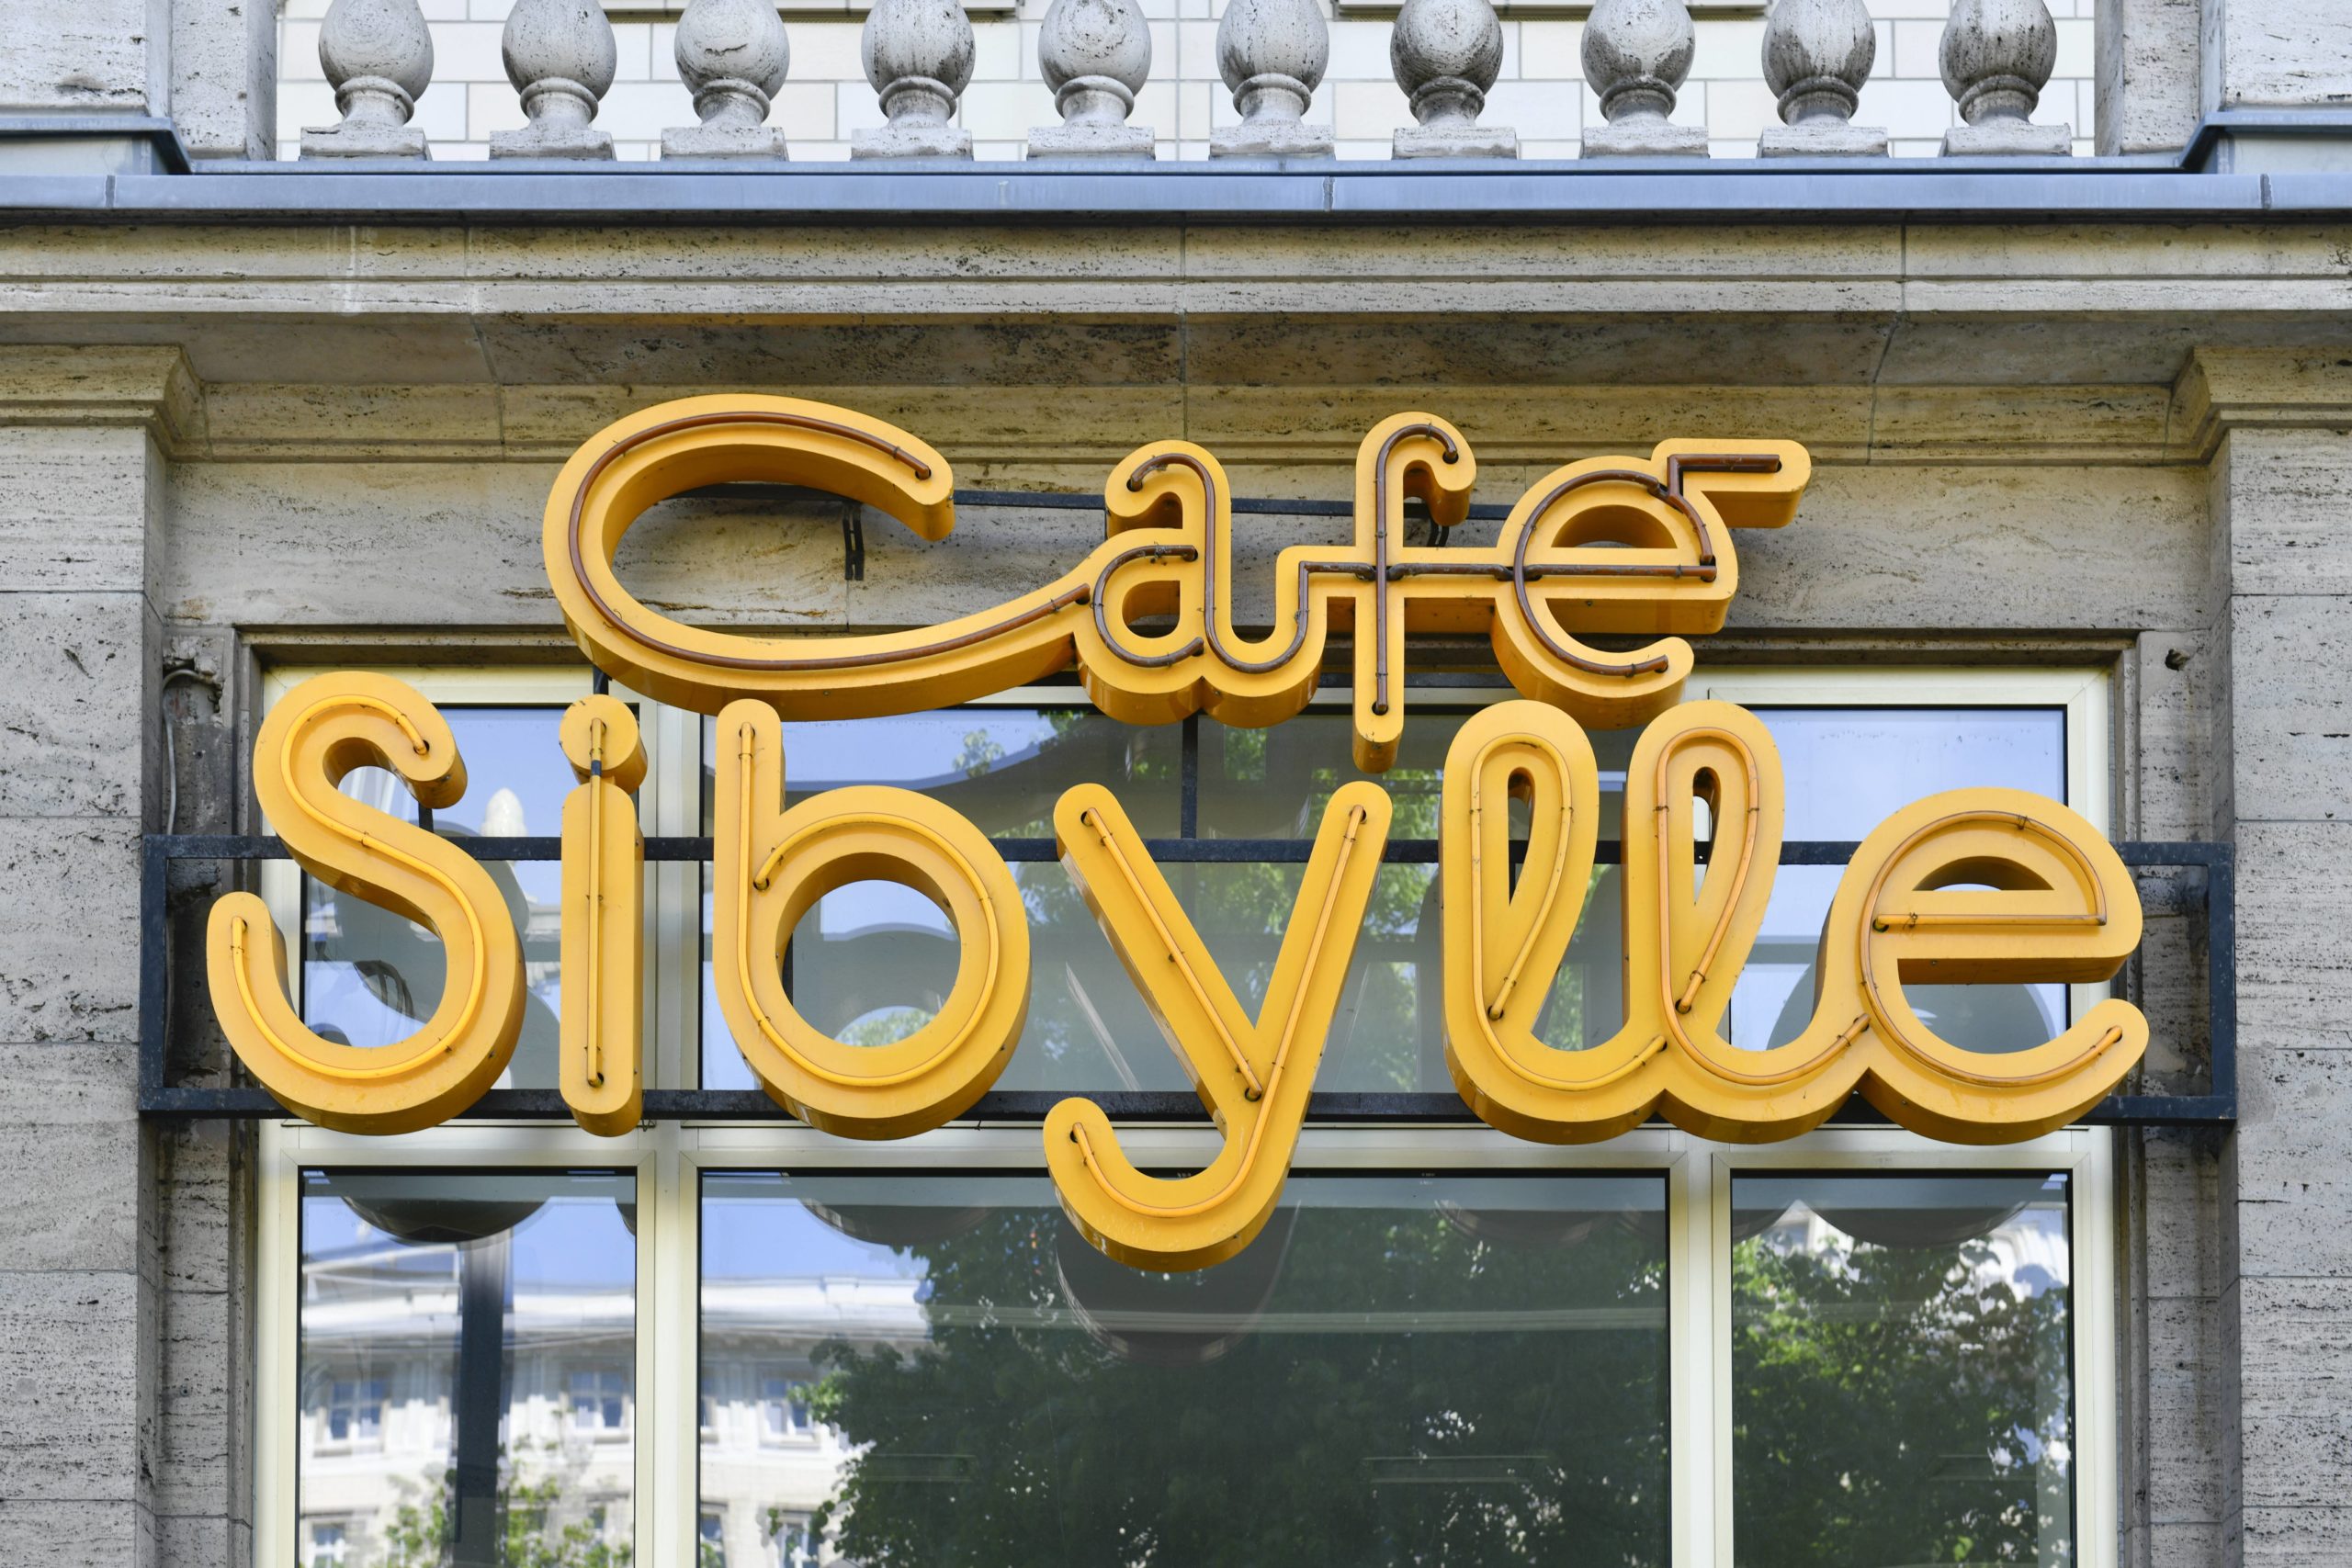 Das Café Sibylle ist ein wichtiger Teil der Geschichte der Karl-Marx-Allee. Der markante Neon-Schriftzug steht unter Denkmalschutz. Foto: Imago/Schöning